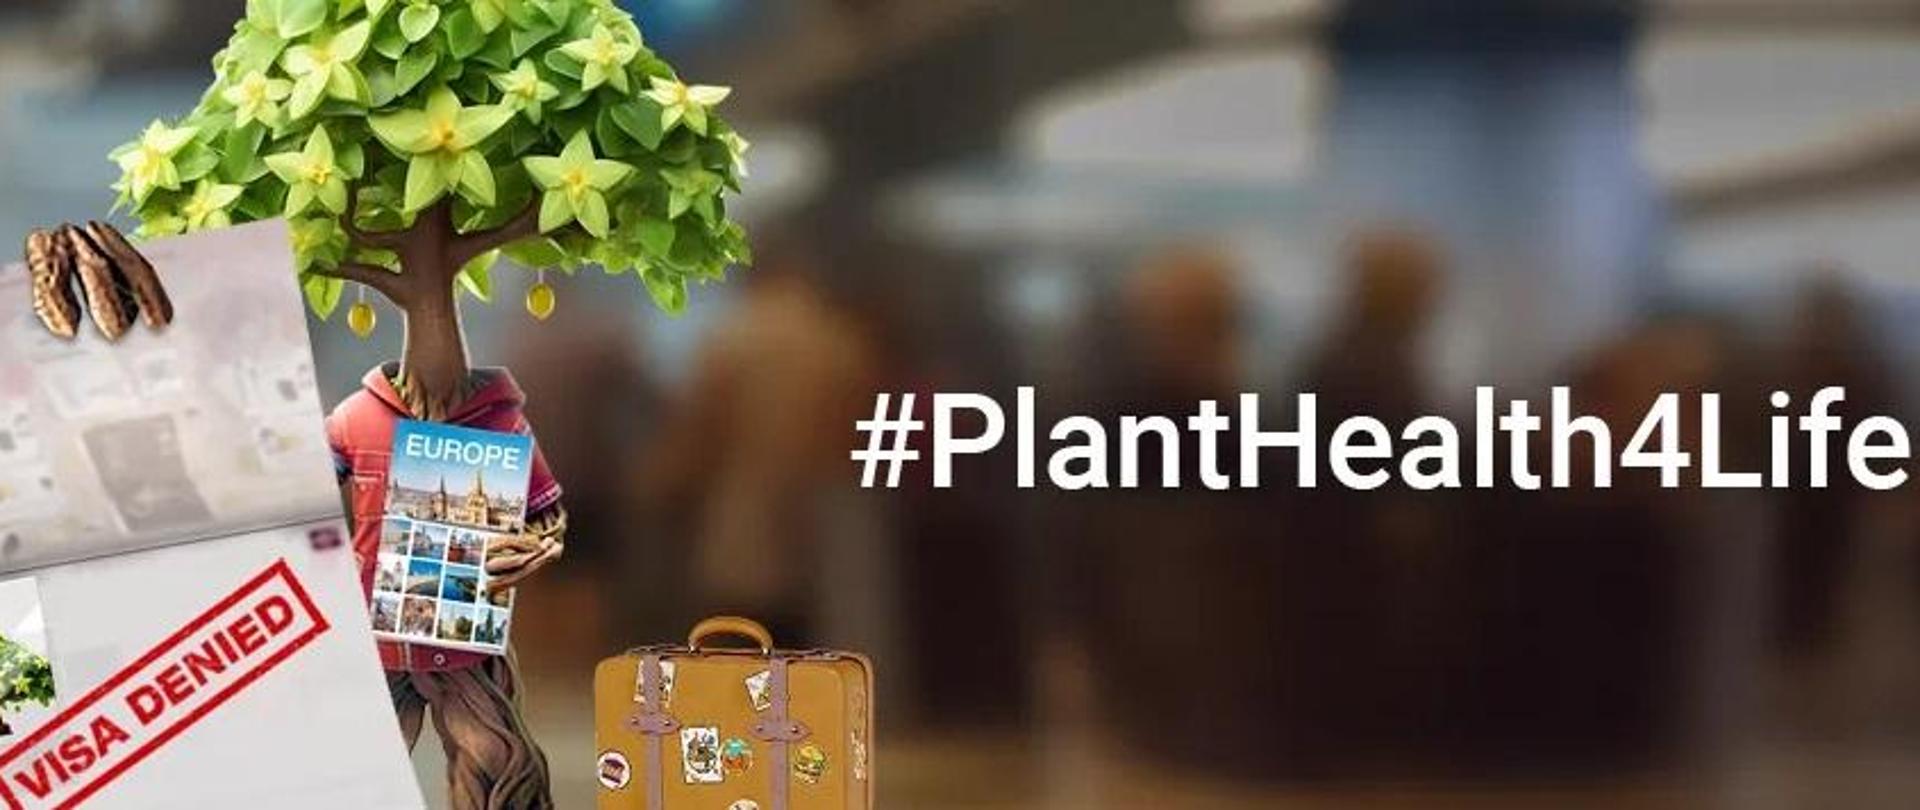 Zdrowie roślin – źródło życia 